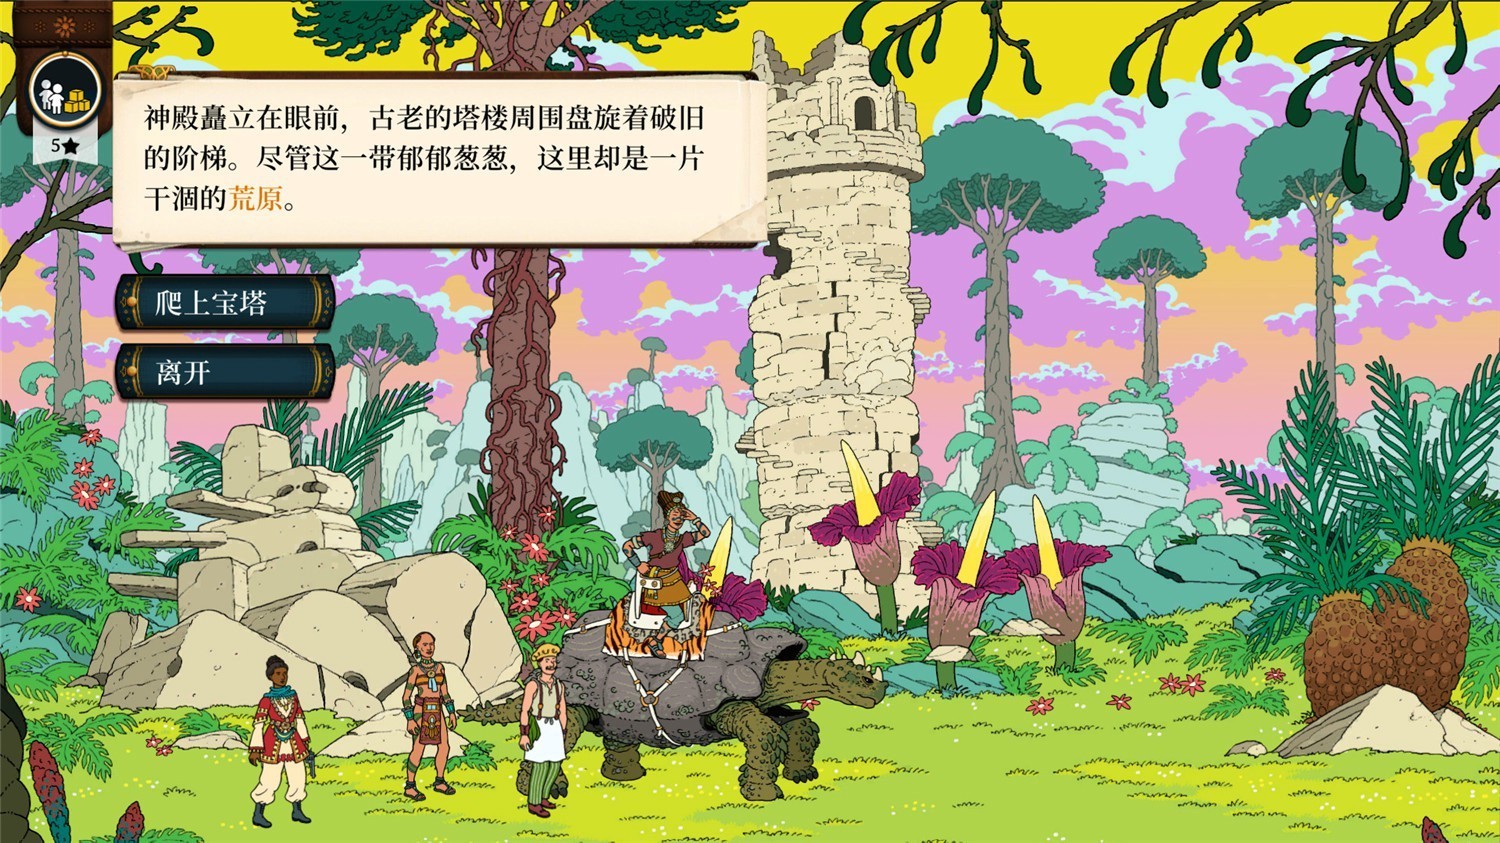 《奇妙探险队2》v3.0.4中文版